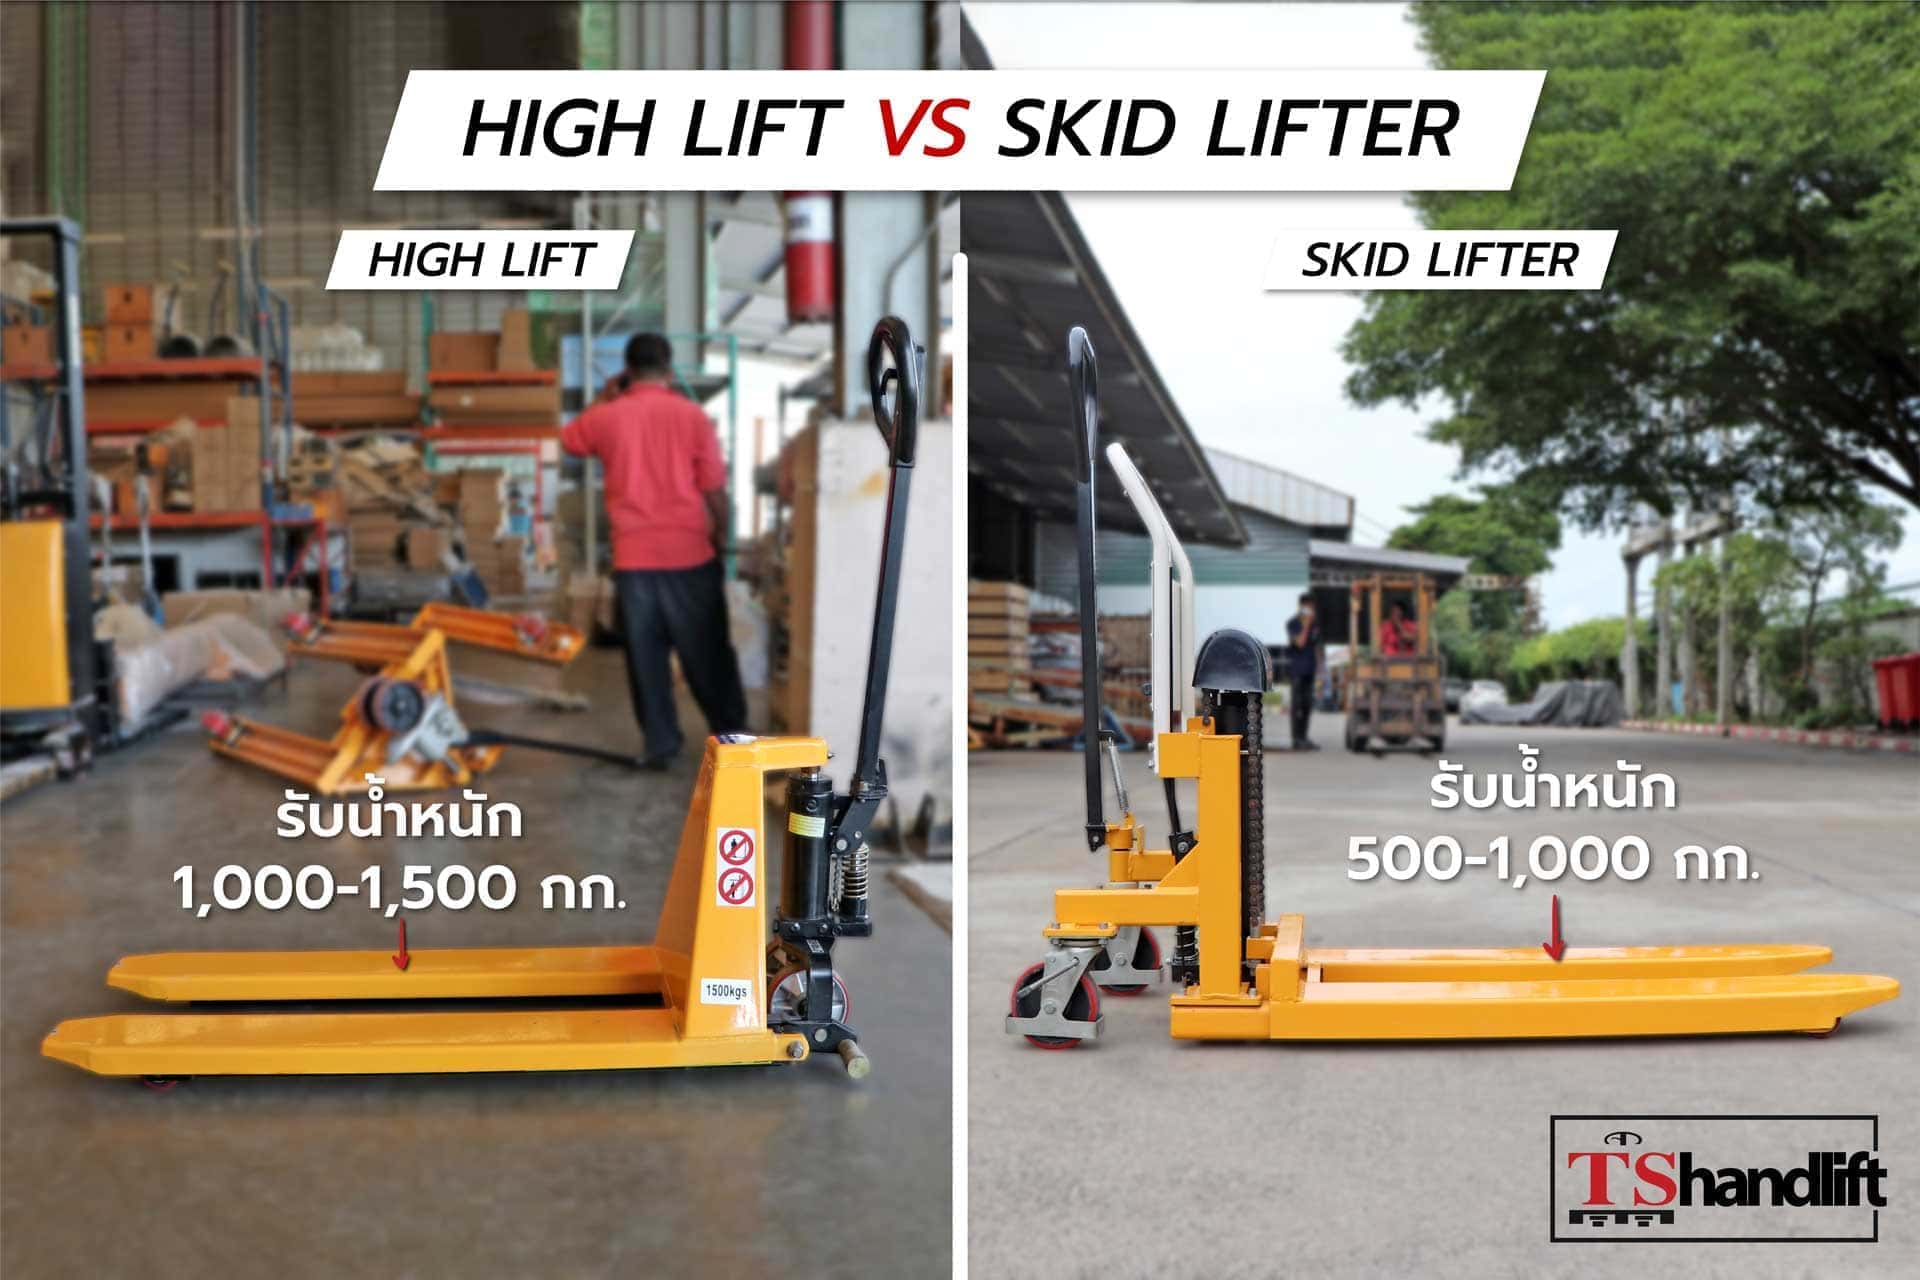 เปรียบเทียบการรับน้ำหนัก แฮนด์ลิฟท์ยกสูง high lift vs skid lifter